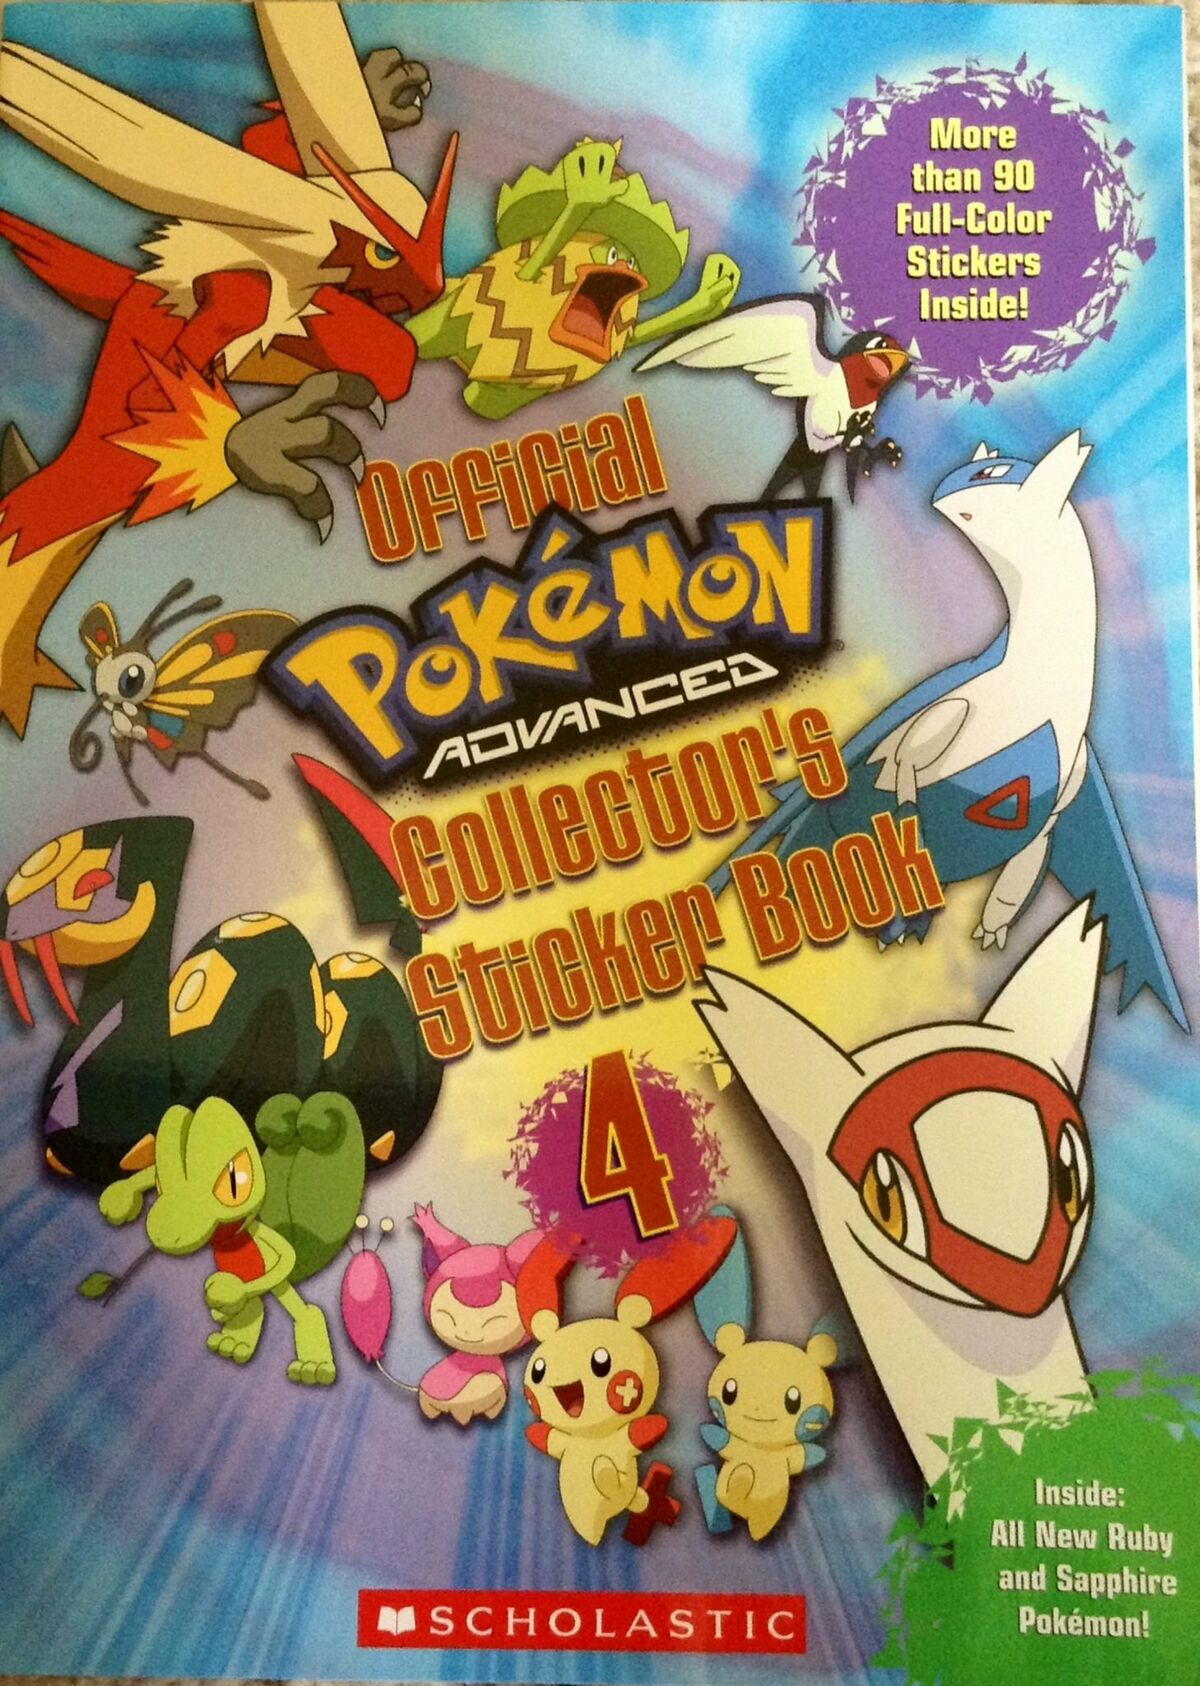 Pokémon Epic Sticker Collection: From Kanto to Alola (1) (Pokemon